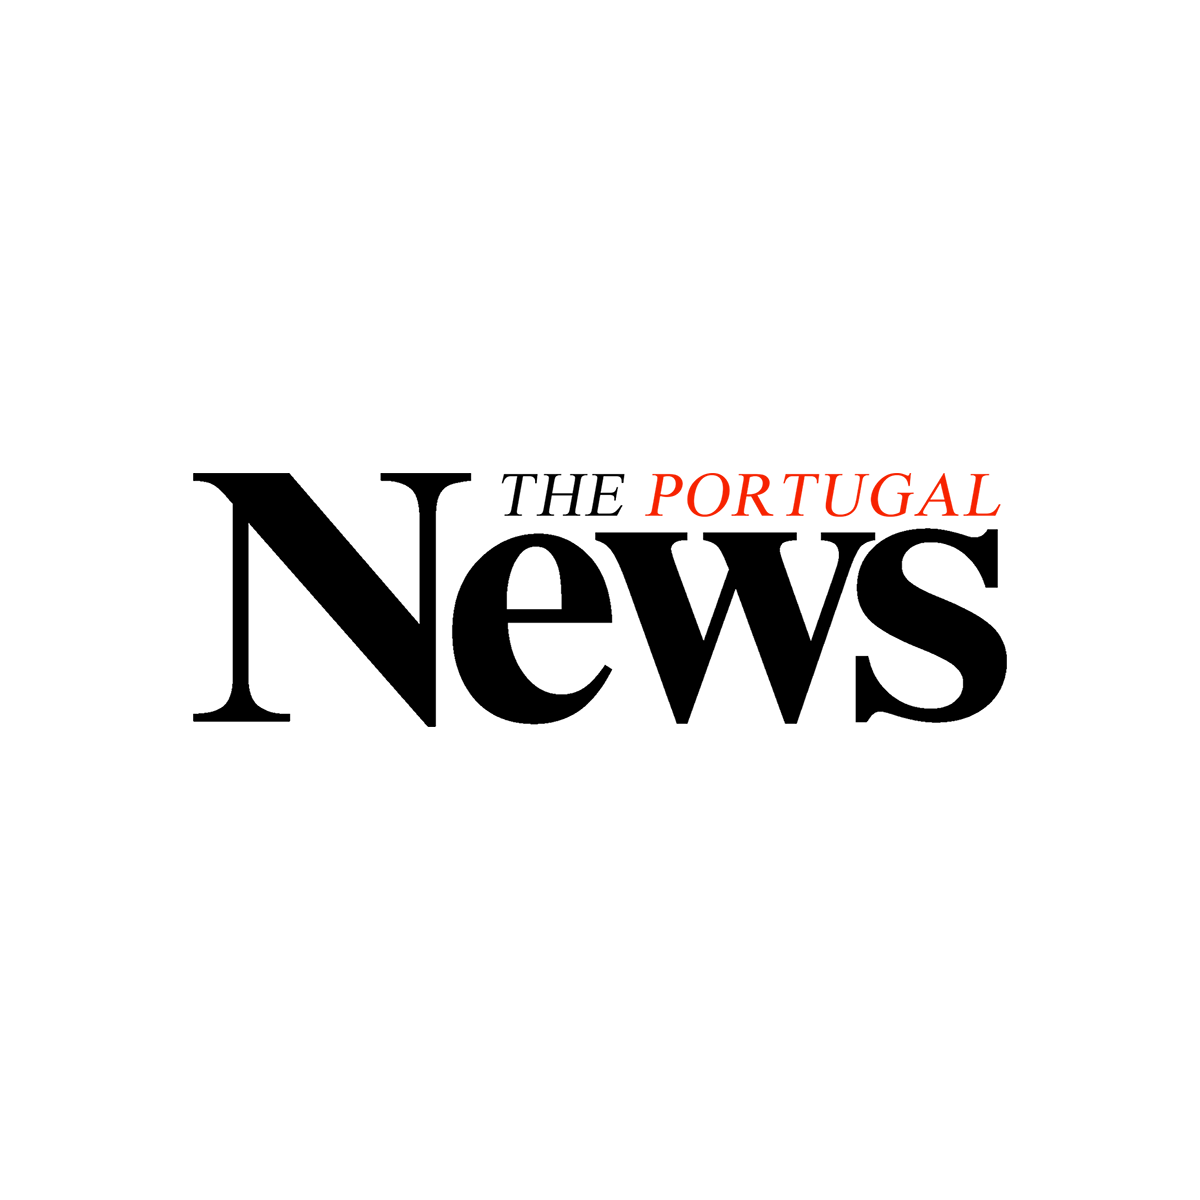 Logo Theportugalnews (1)